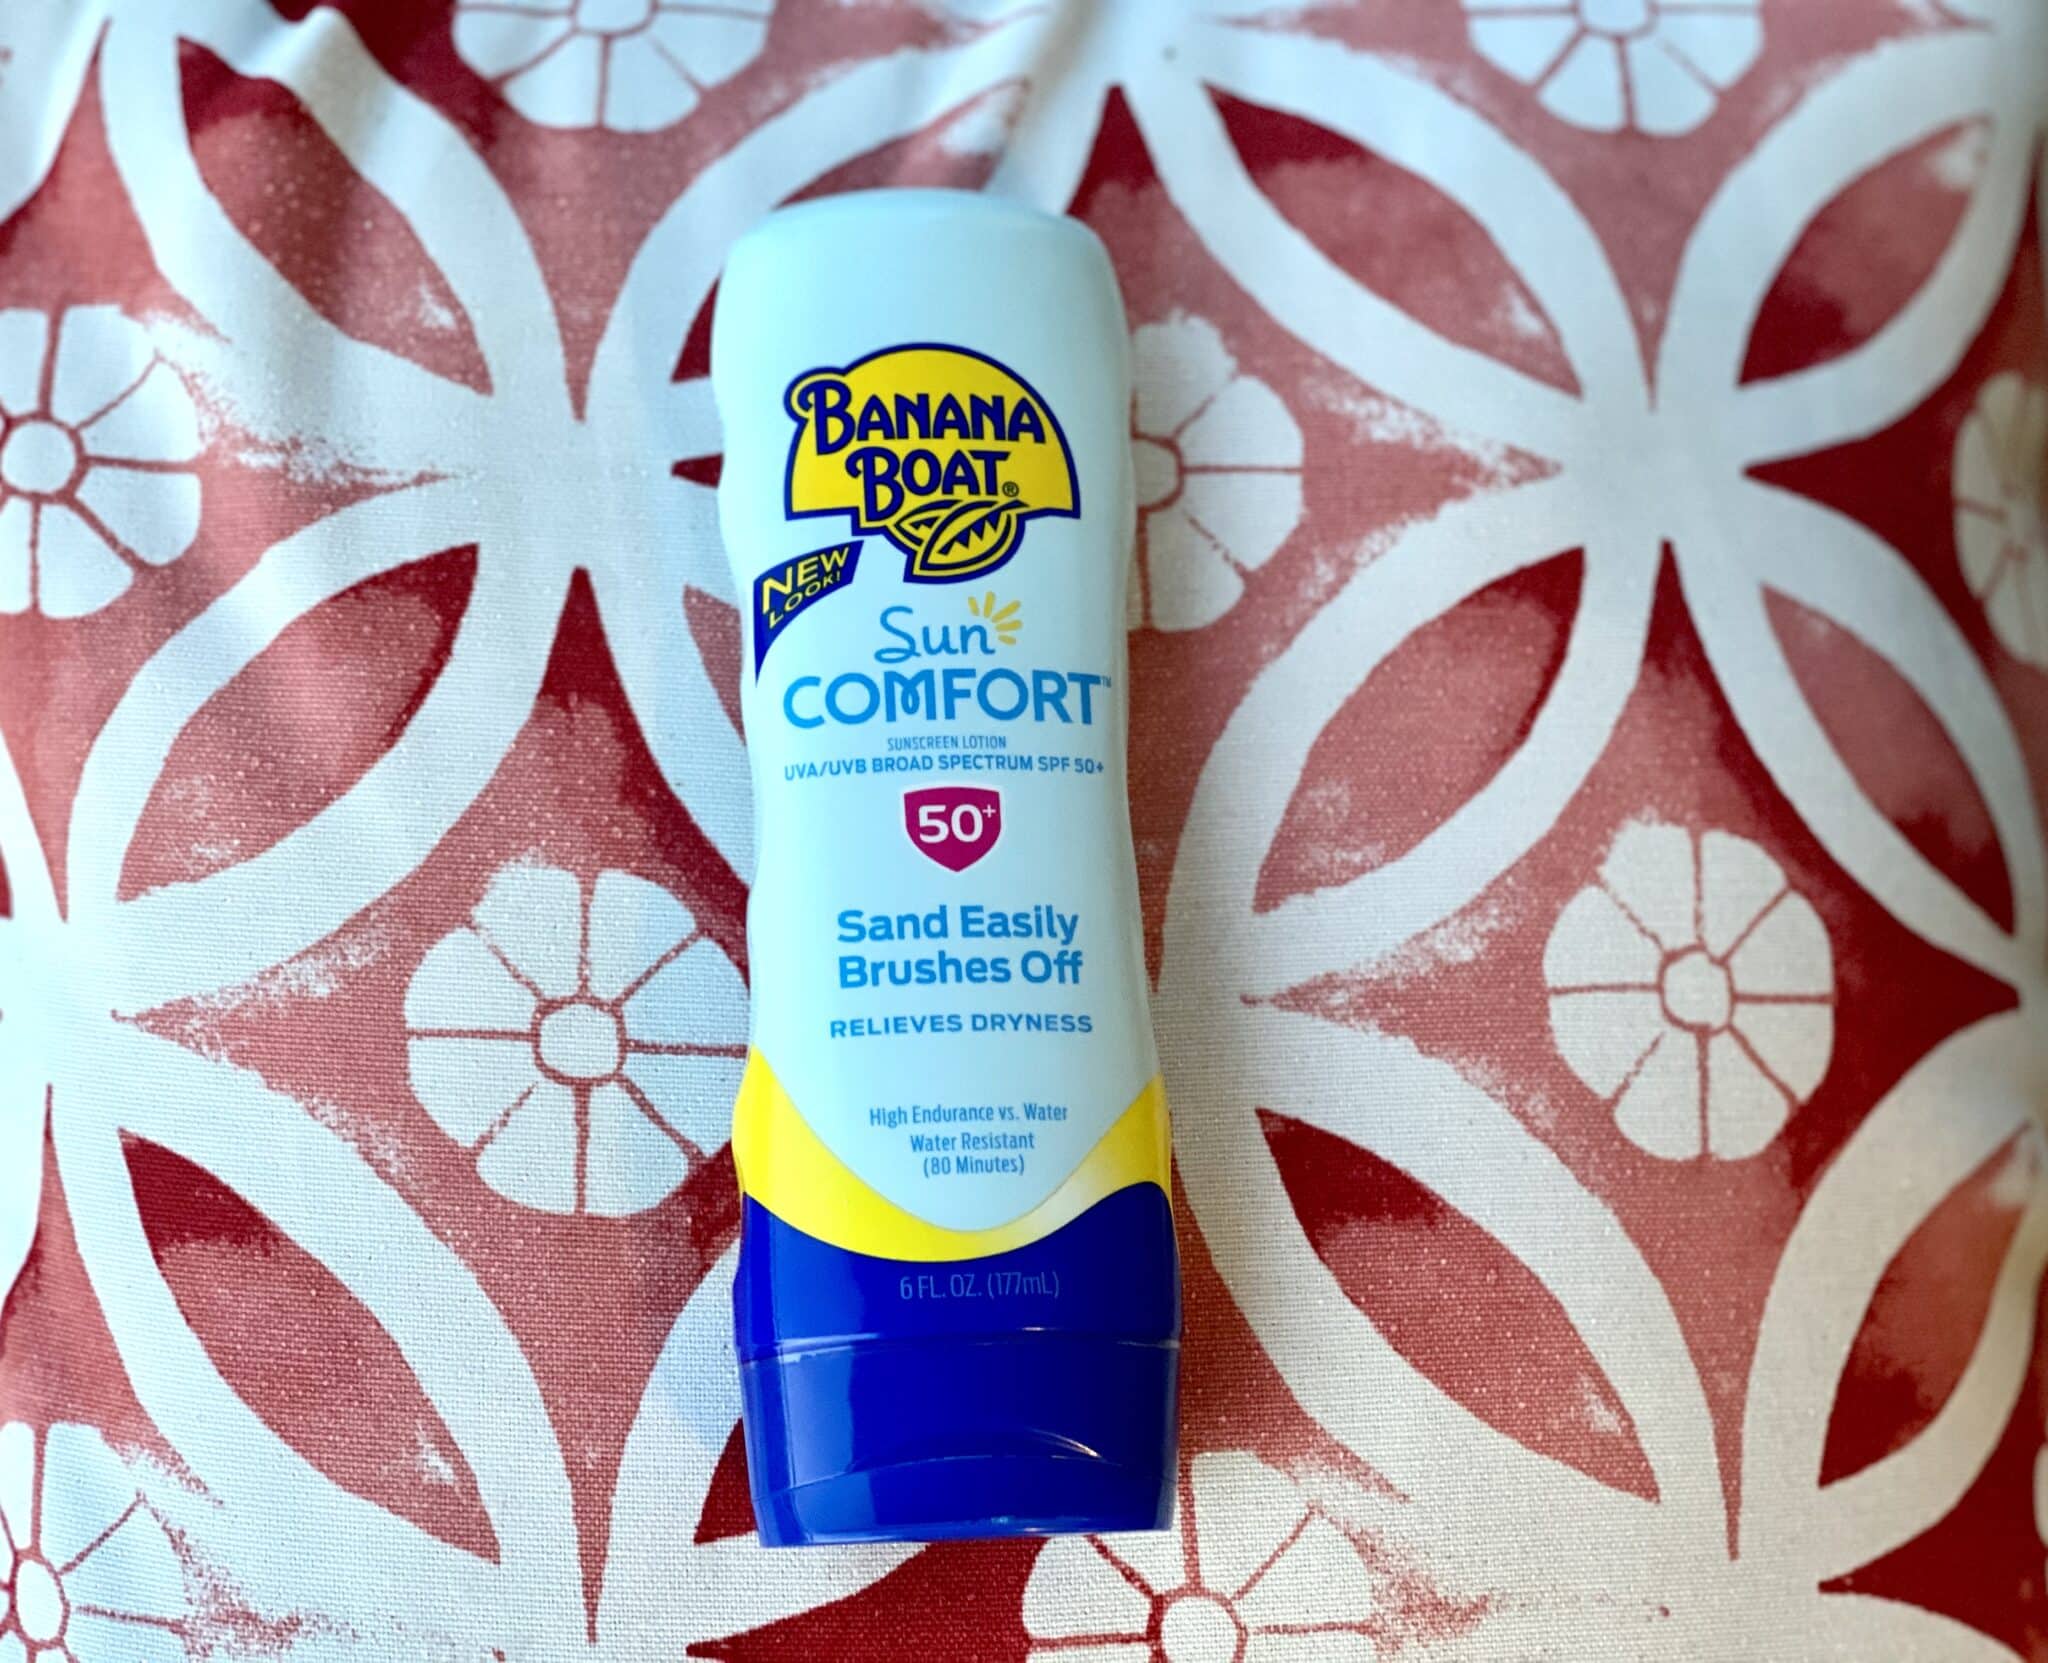 Banana Boat sunscreen review